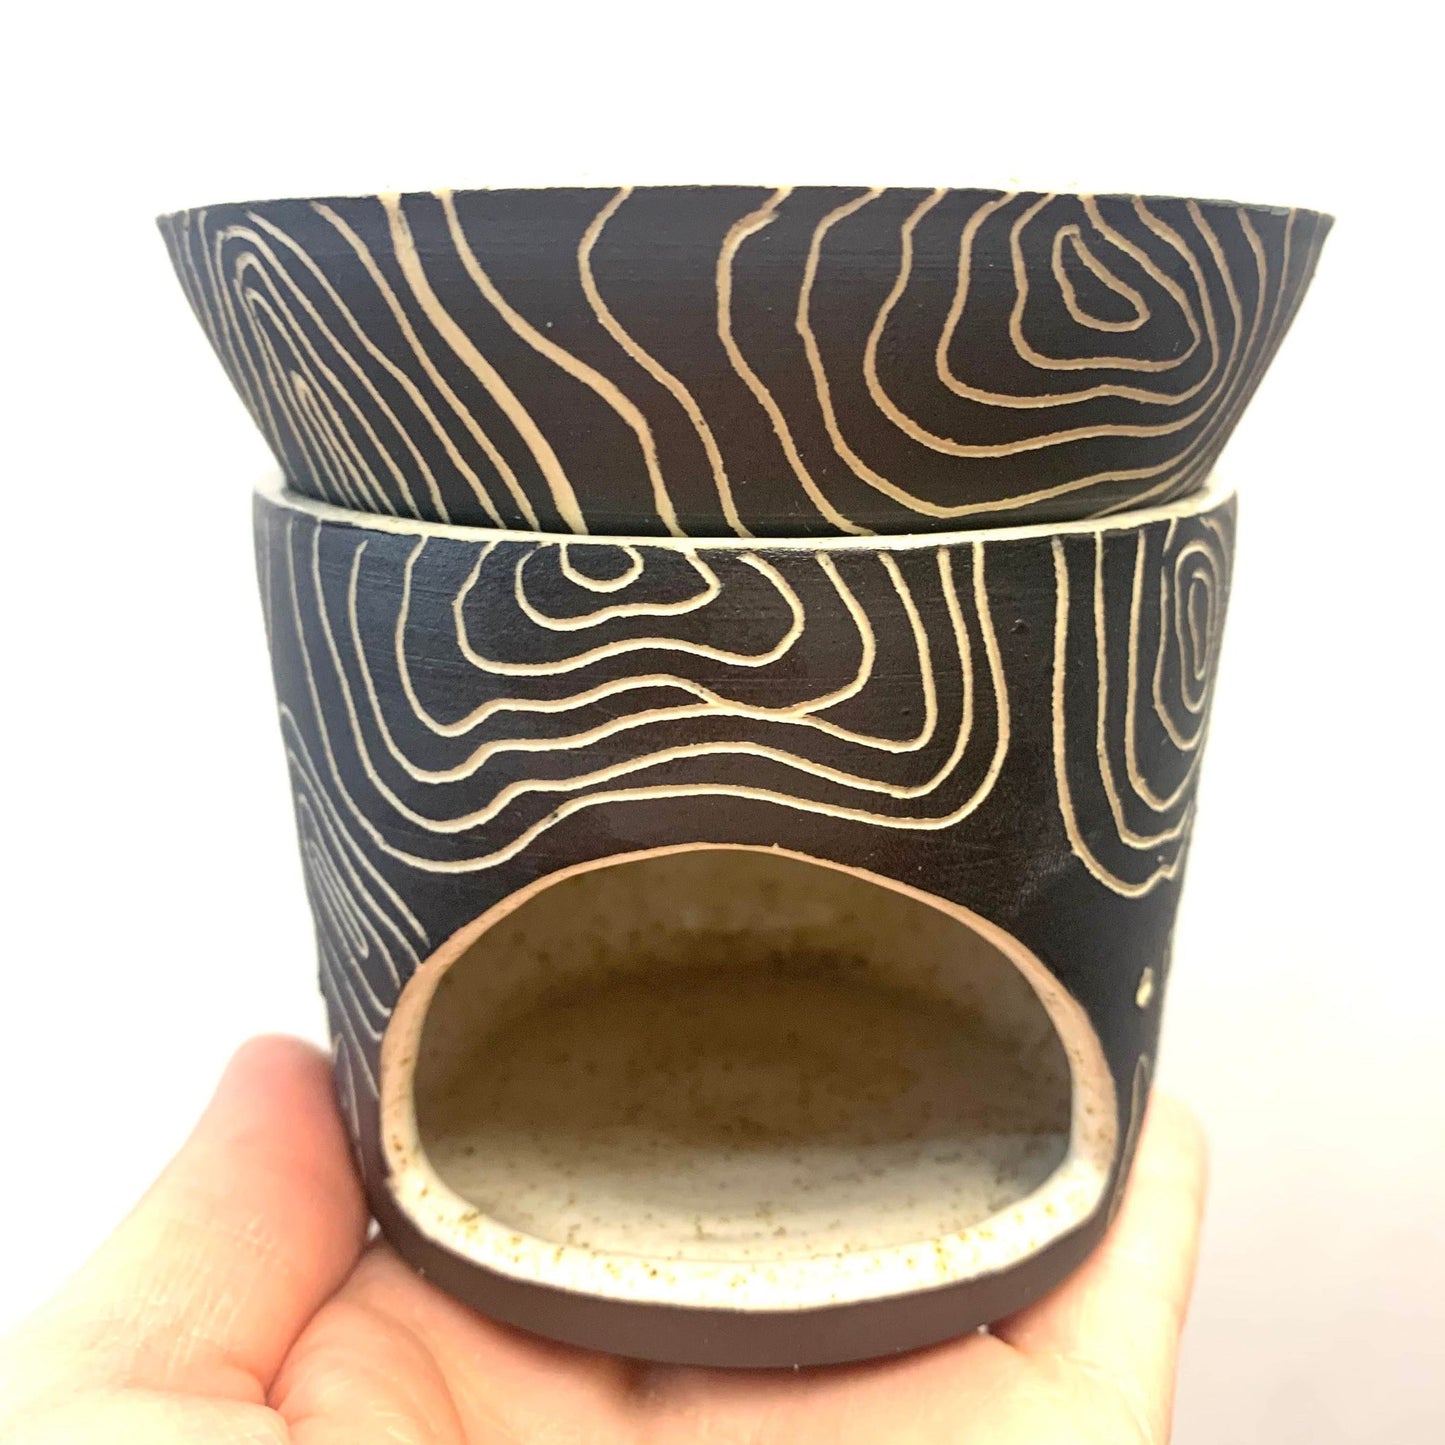 POH TERRI - Sgraffito Ceramic Oil Burners